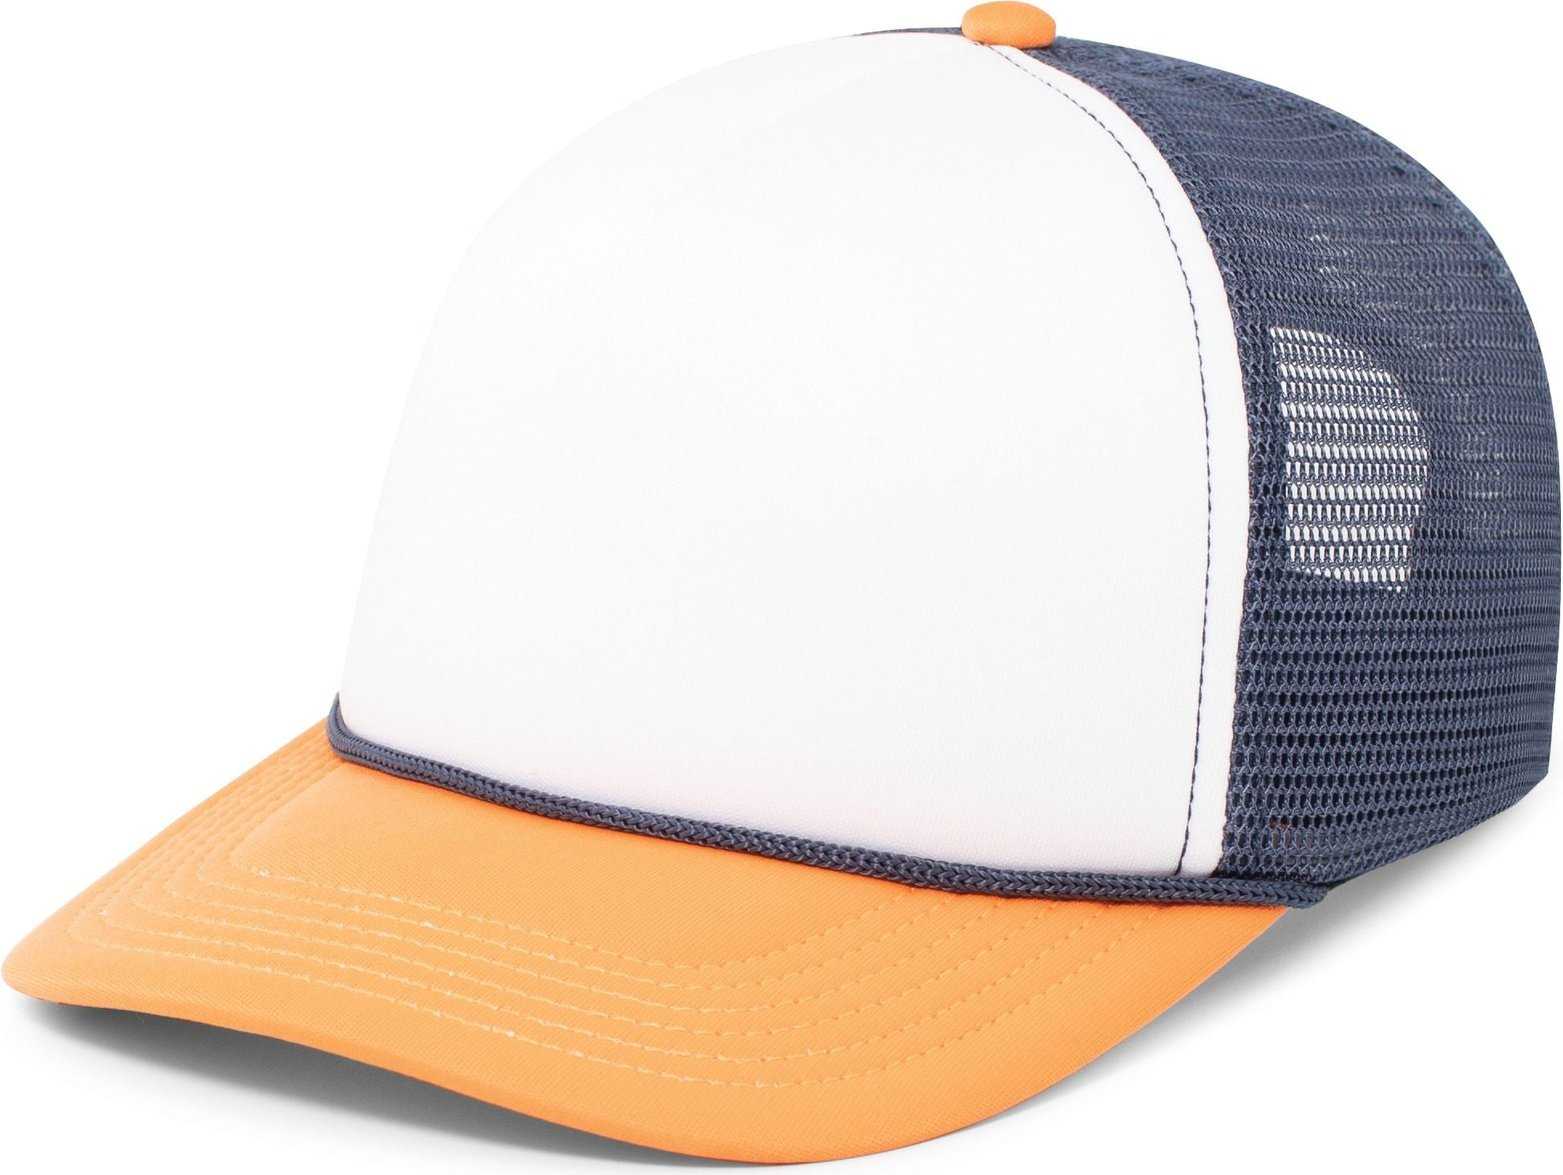 Pacific Headwear P782 Foamie Fresh Trucker Cap - White Navy Orange - HIT a Double